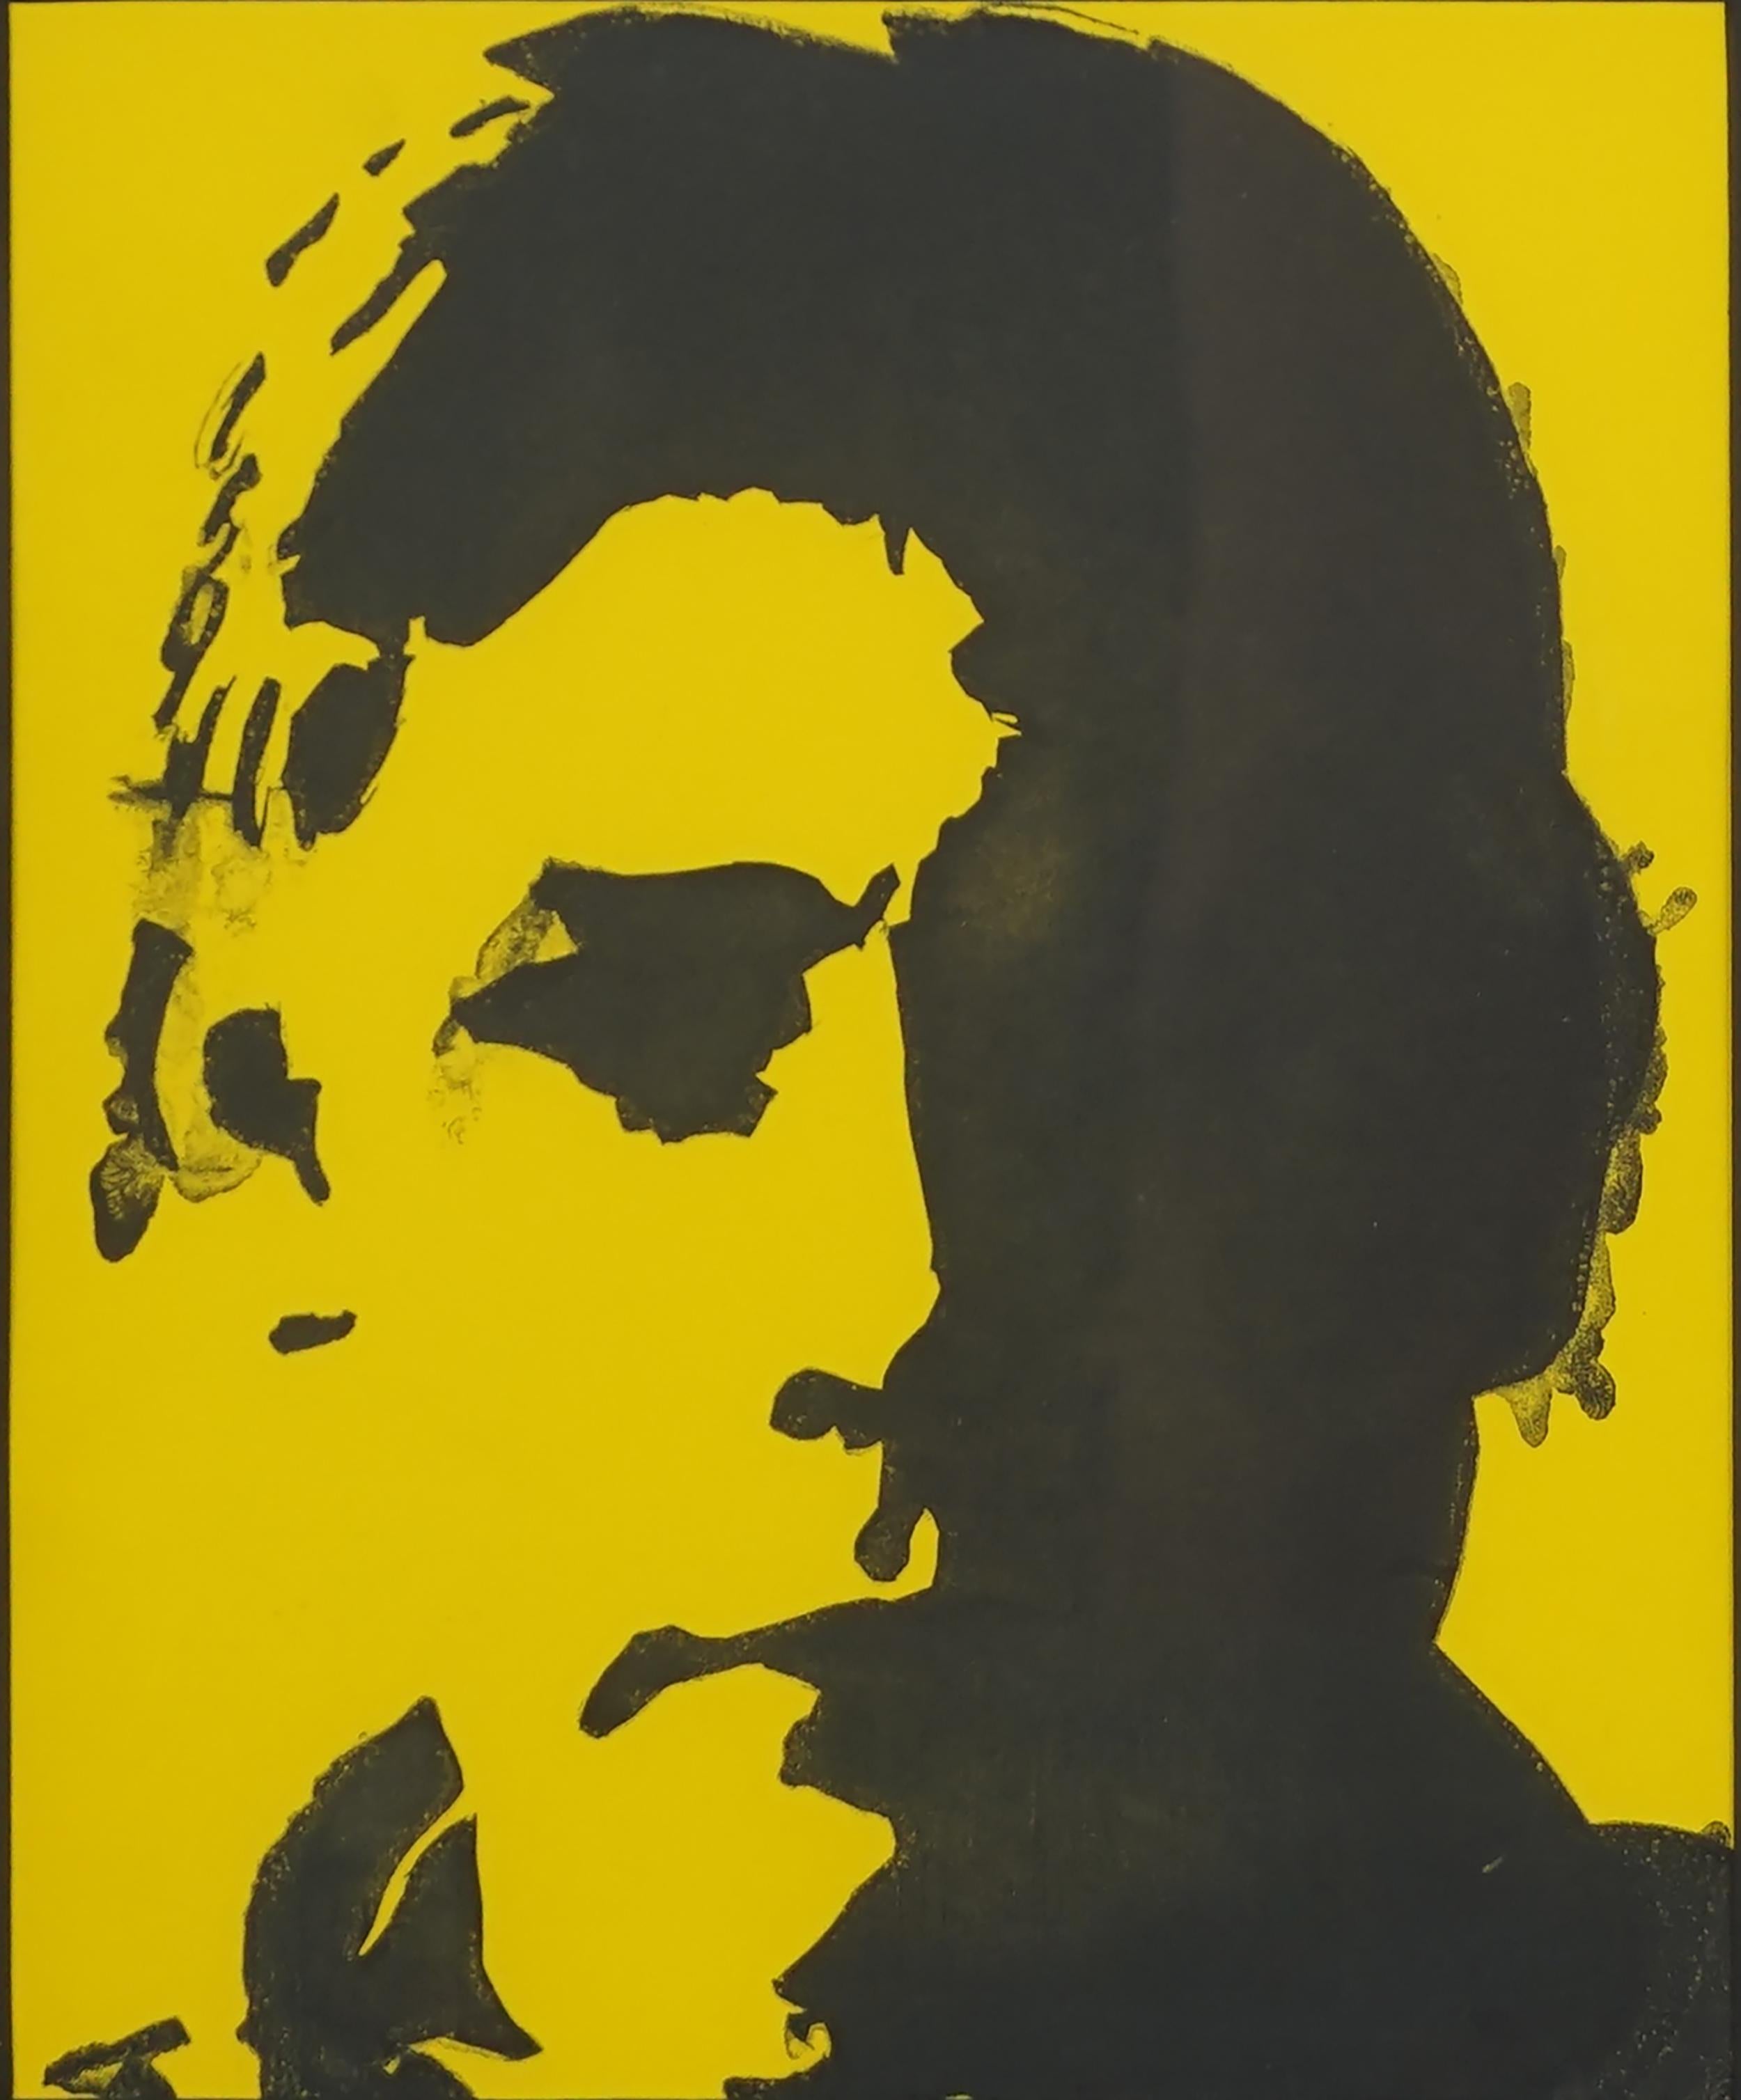 Magnifique sérigraphie en diptyque d'un homme en jaune et rouge par un artiste inconnu, vers 2000. Non signée. Présenté dans un cadre métallique blanc sous verre. Vendue à l'origine par la Walters Adams Gallery. Chaque image mesure 9,75 